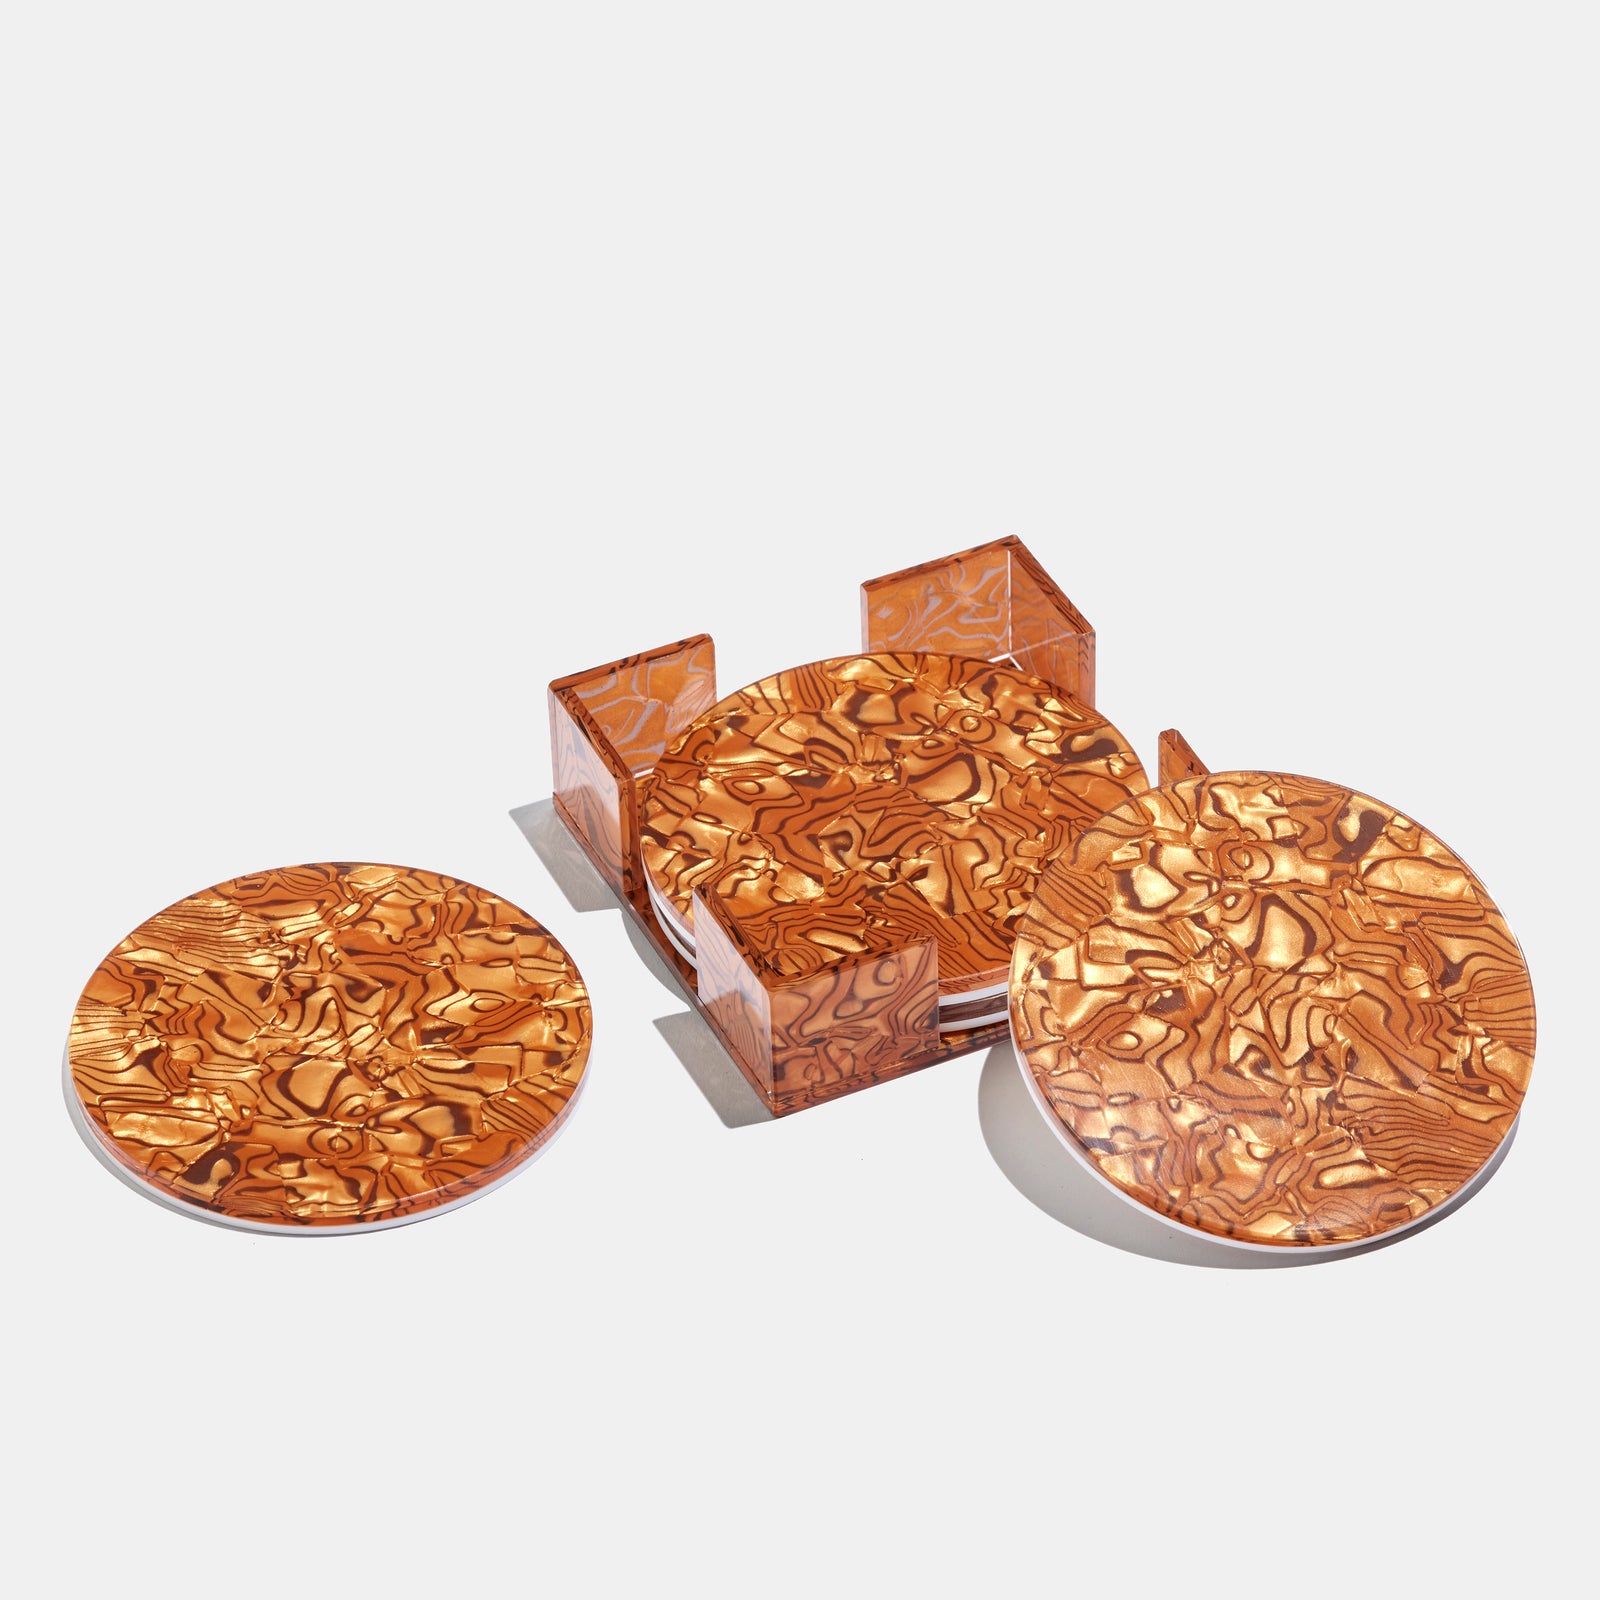 Copper coasters